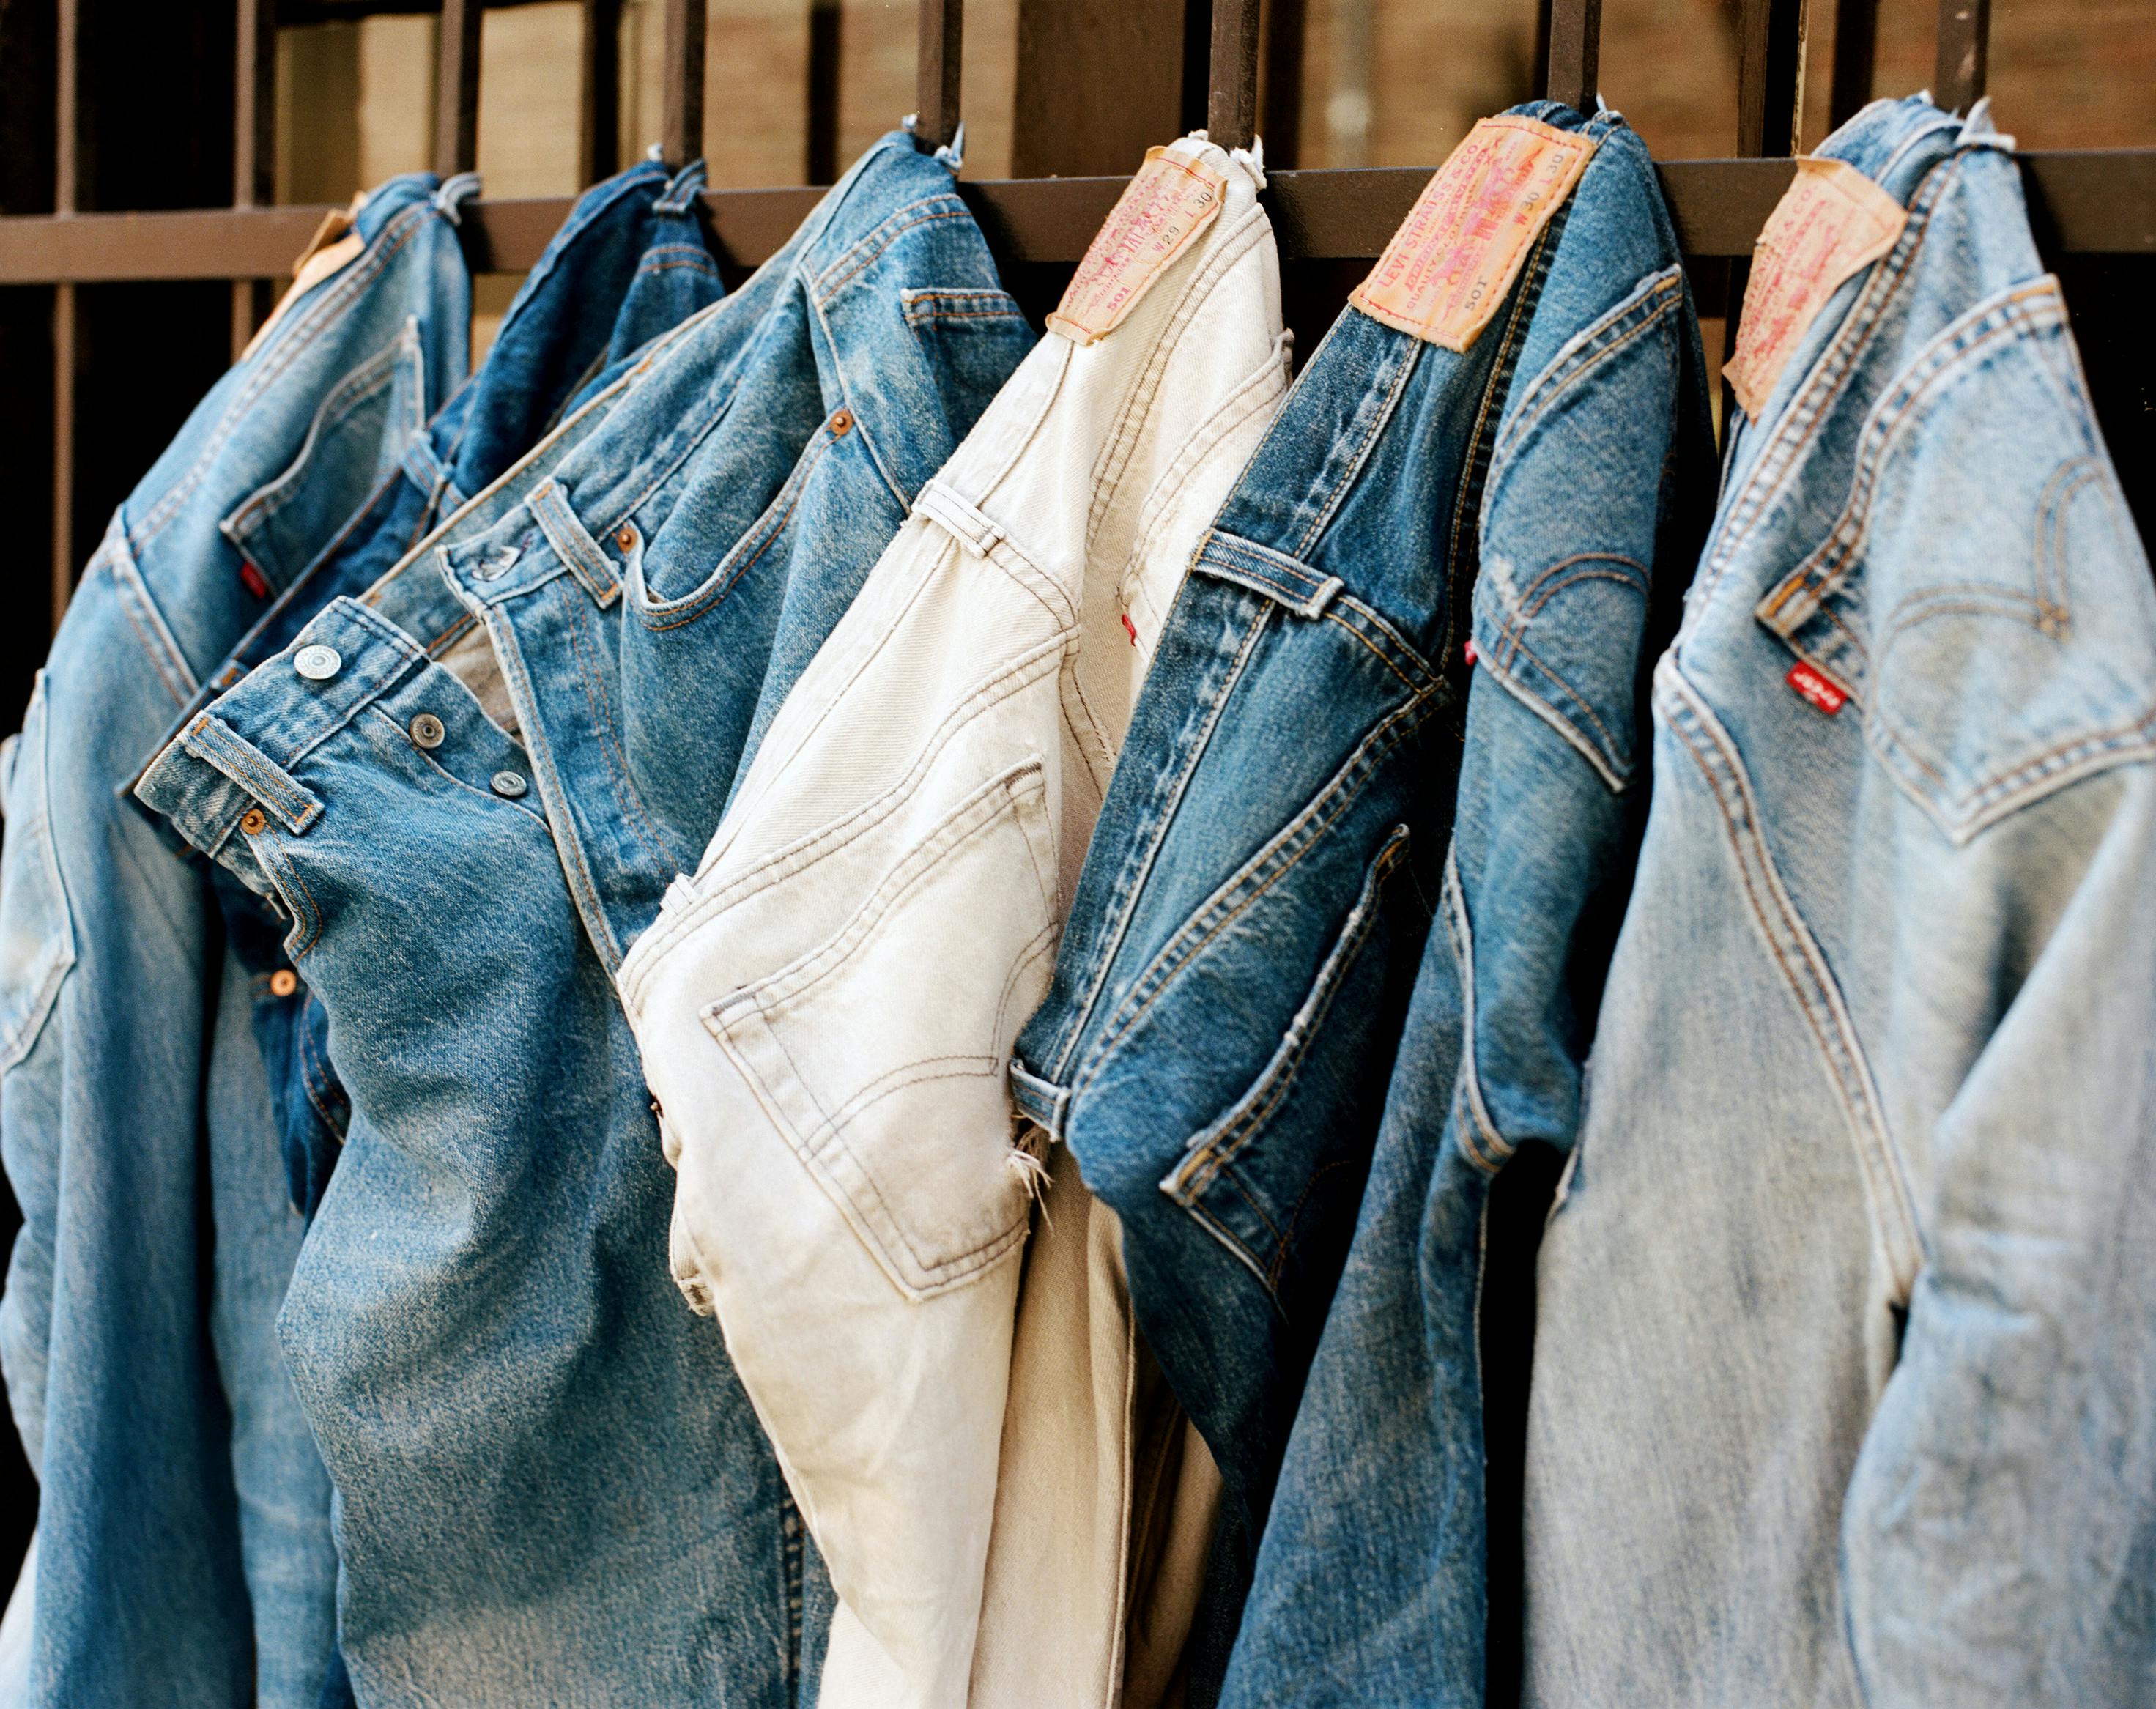 Gespierd noot Aan het water Thrift and Vintage Levi's Jeans and Trucker Jackets